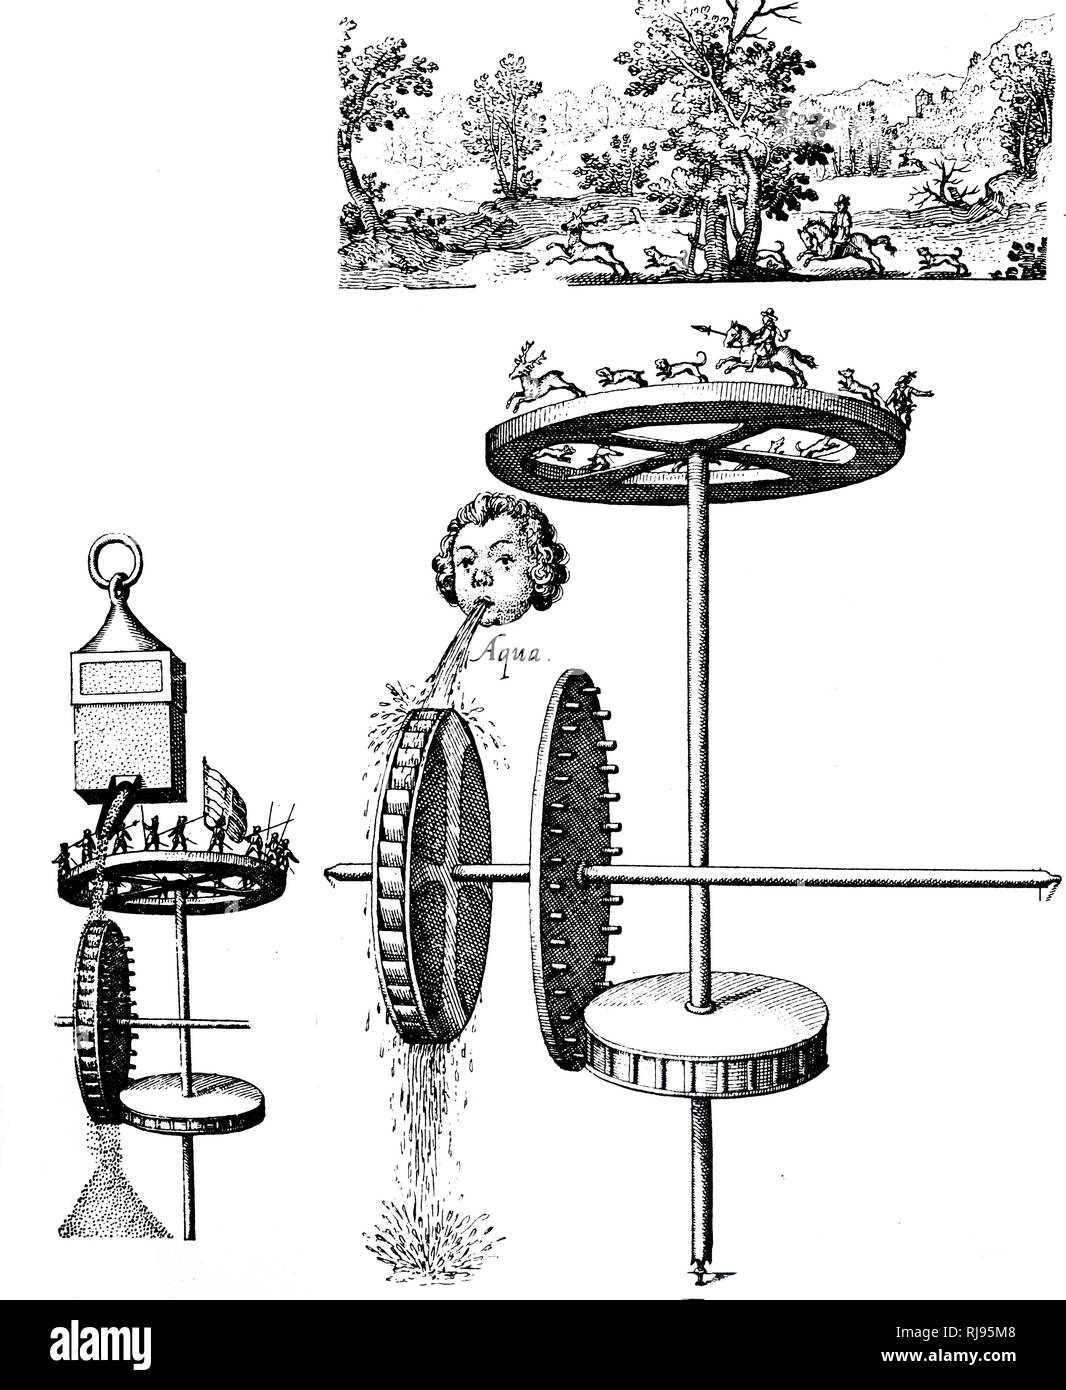 Automates mécaniques dispositifs pour mouvements de rotation, au sein d'un diorama. Illustration de Fludd's 'Utriusque Cosmi Maioris', 1617-1621. Robert Fludd, également connu sous le nom de Robertus de Fluctibus (1574 - 1637), était un éminent médecin anglais Paracelsian avec tant scientifique que des intérêts occultes. Banque D'Images